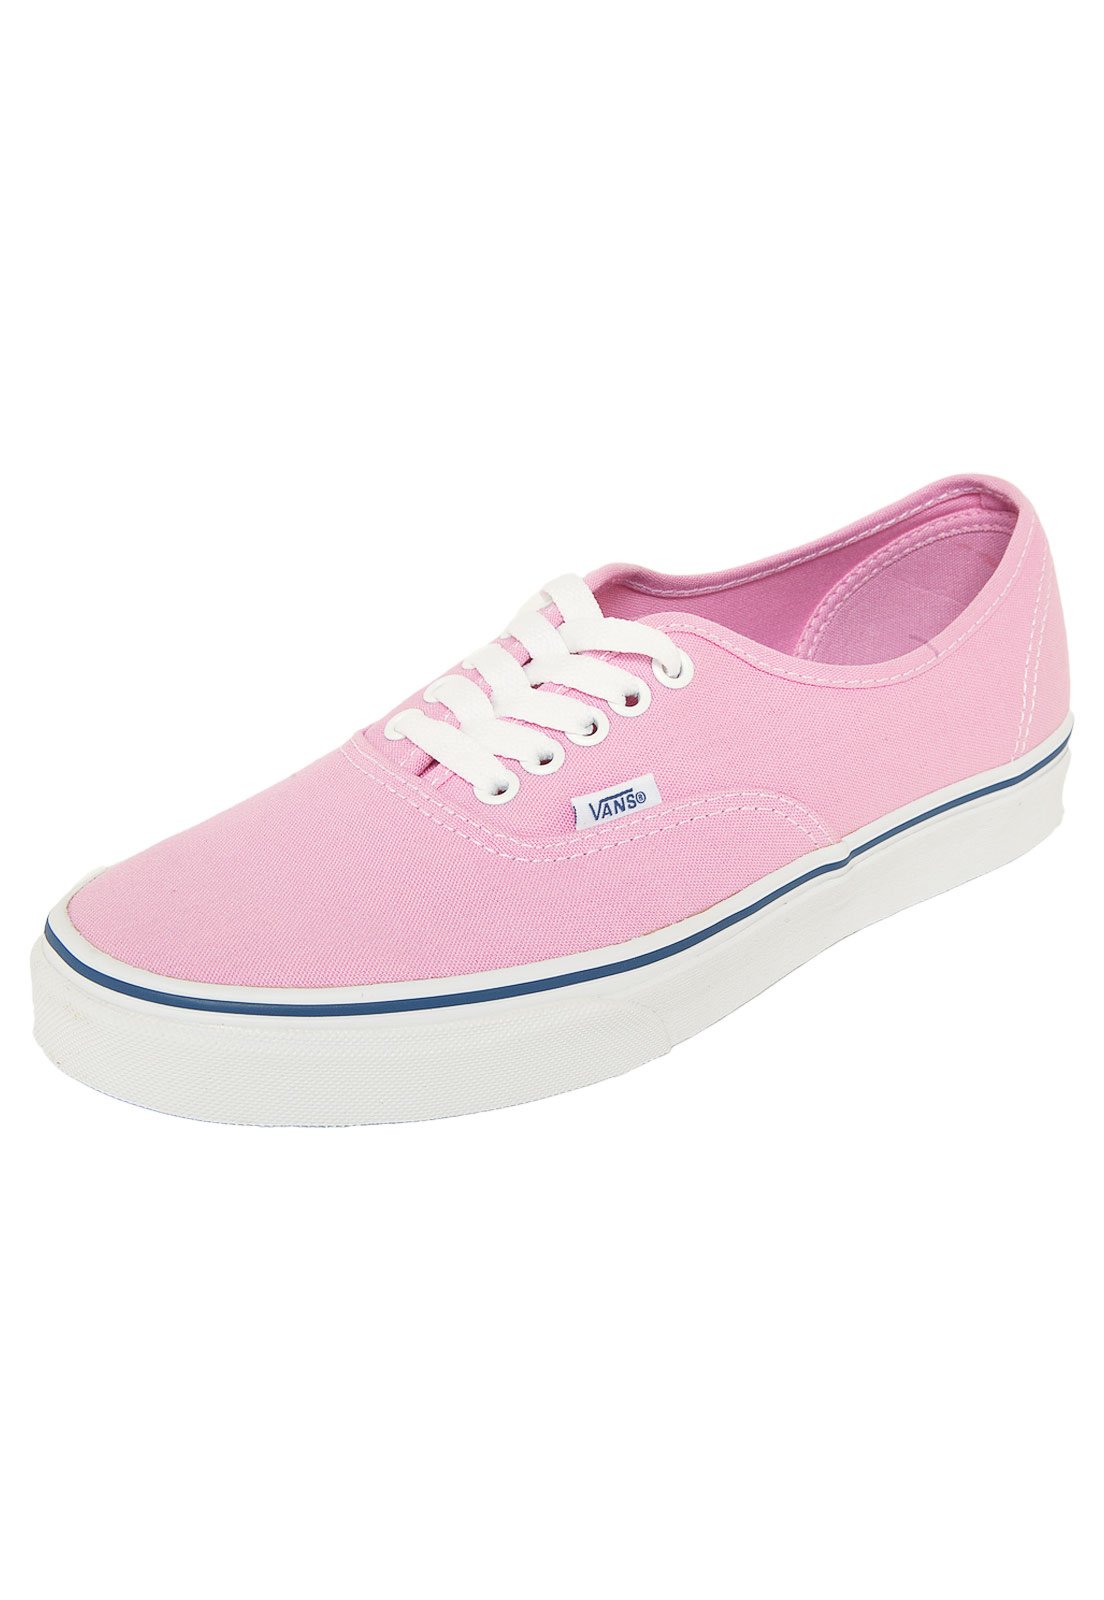 sapato vans feminino rosa